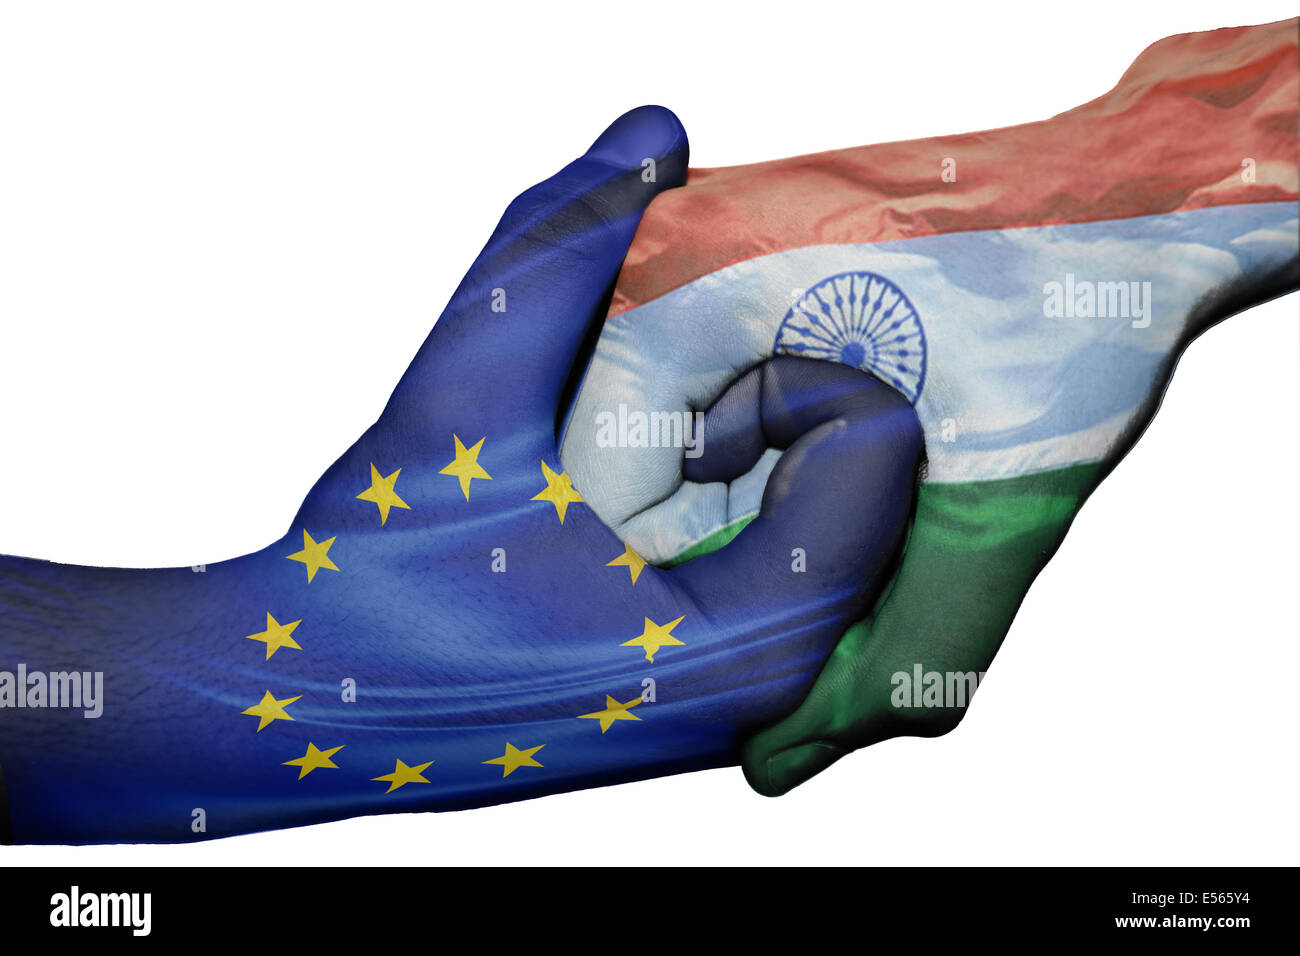 Handshake diplomatiche tra paesi: bandiere di Unione europea e India sovradipinta le due mani Foto Stock